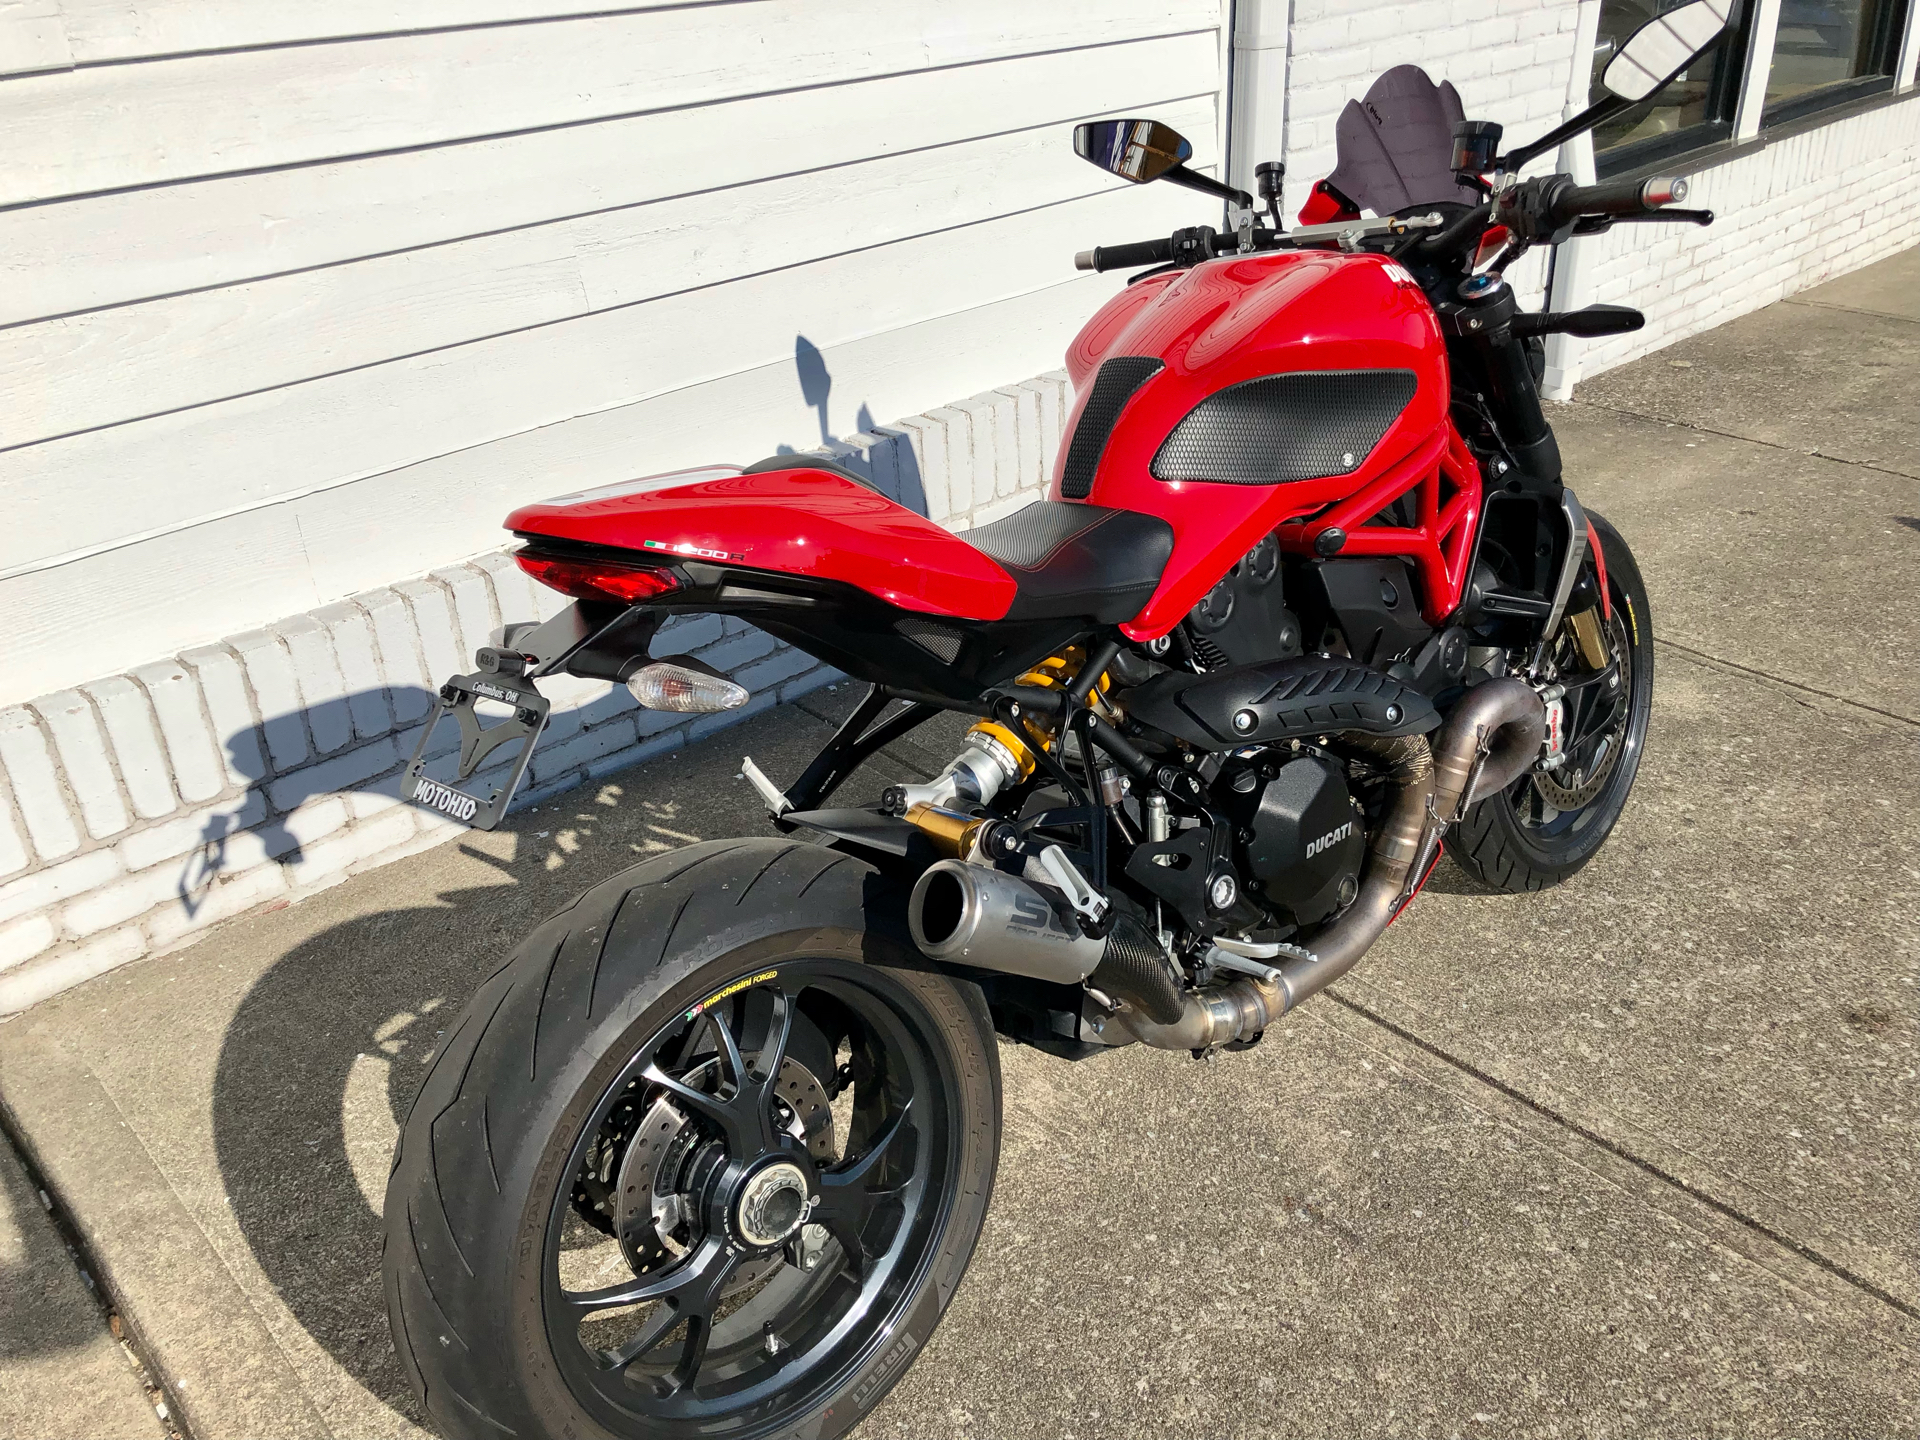 2019 Ducati Monster 1200 R in Columbus, Ohio - Photo 3